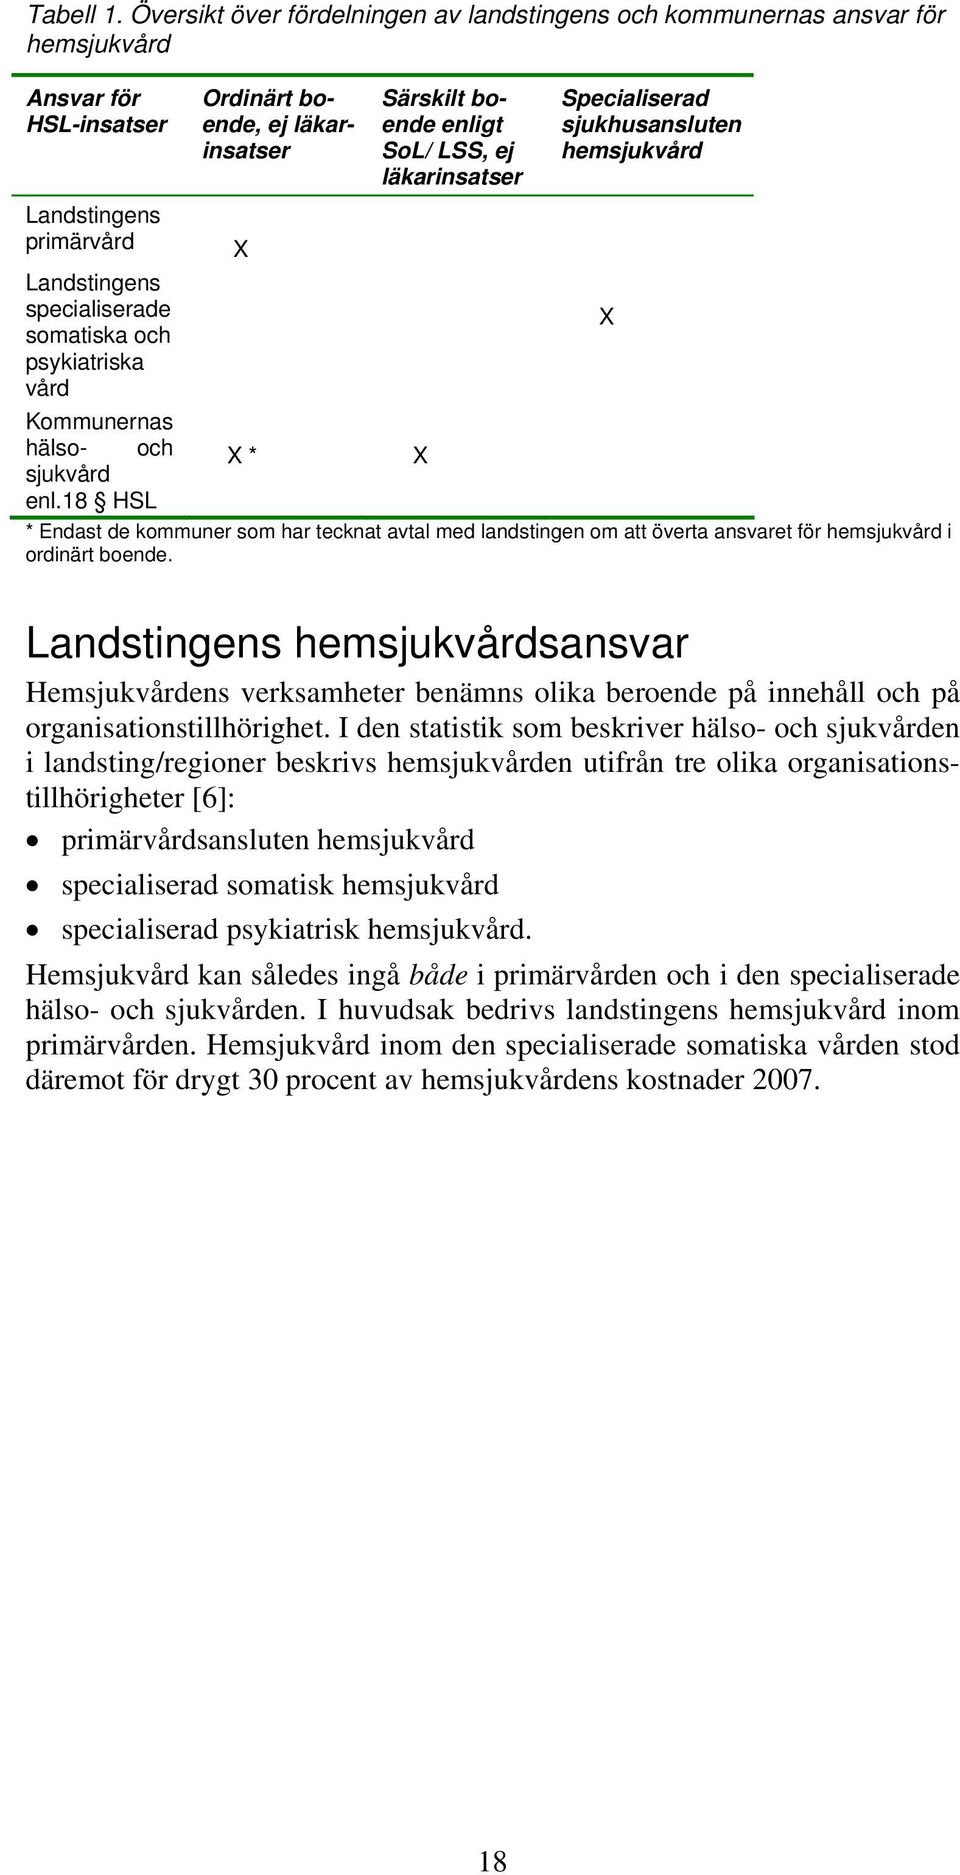 ej läkarinsatser Specialiserad sjukhusansluten hemsjukvård Landstingens specialiserade somatiska och X psykiatriska vård Kommunernas hälso- och sjukvård X * X enl.